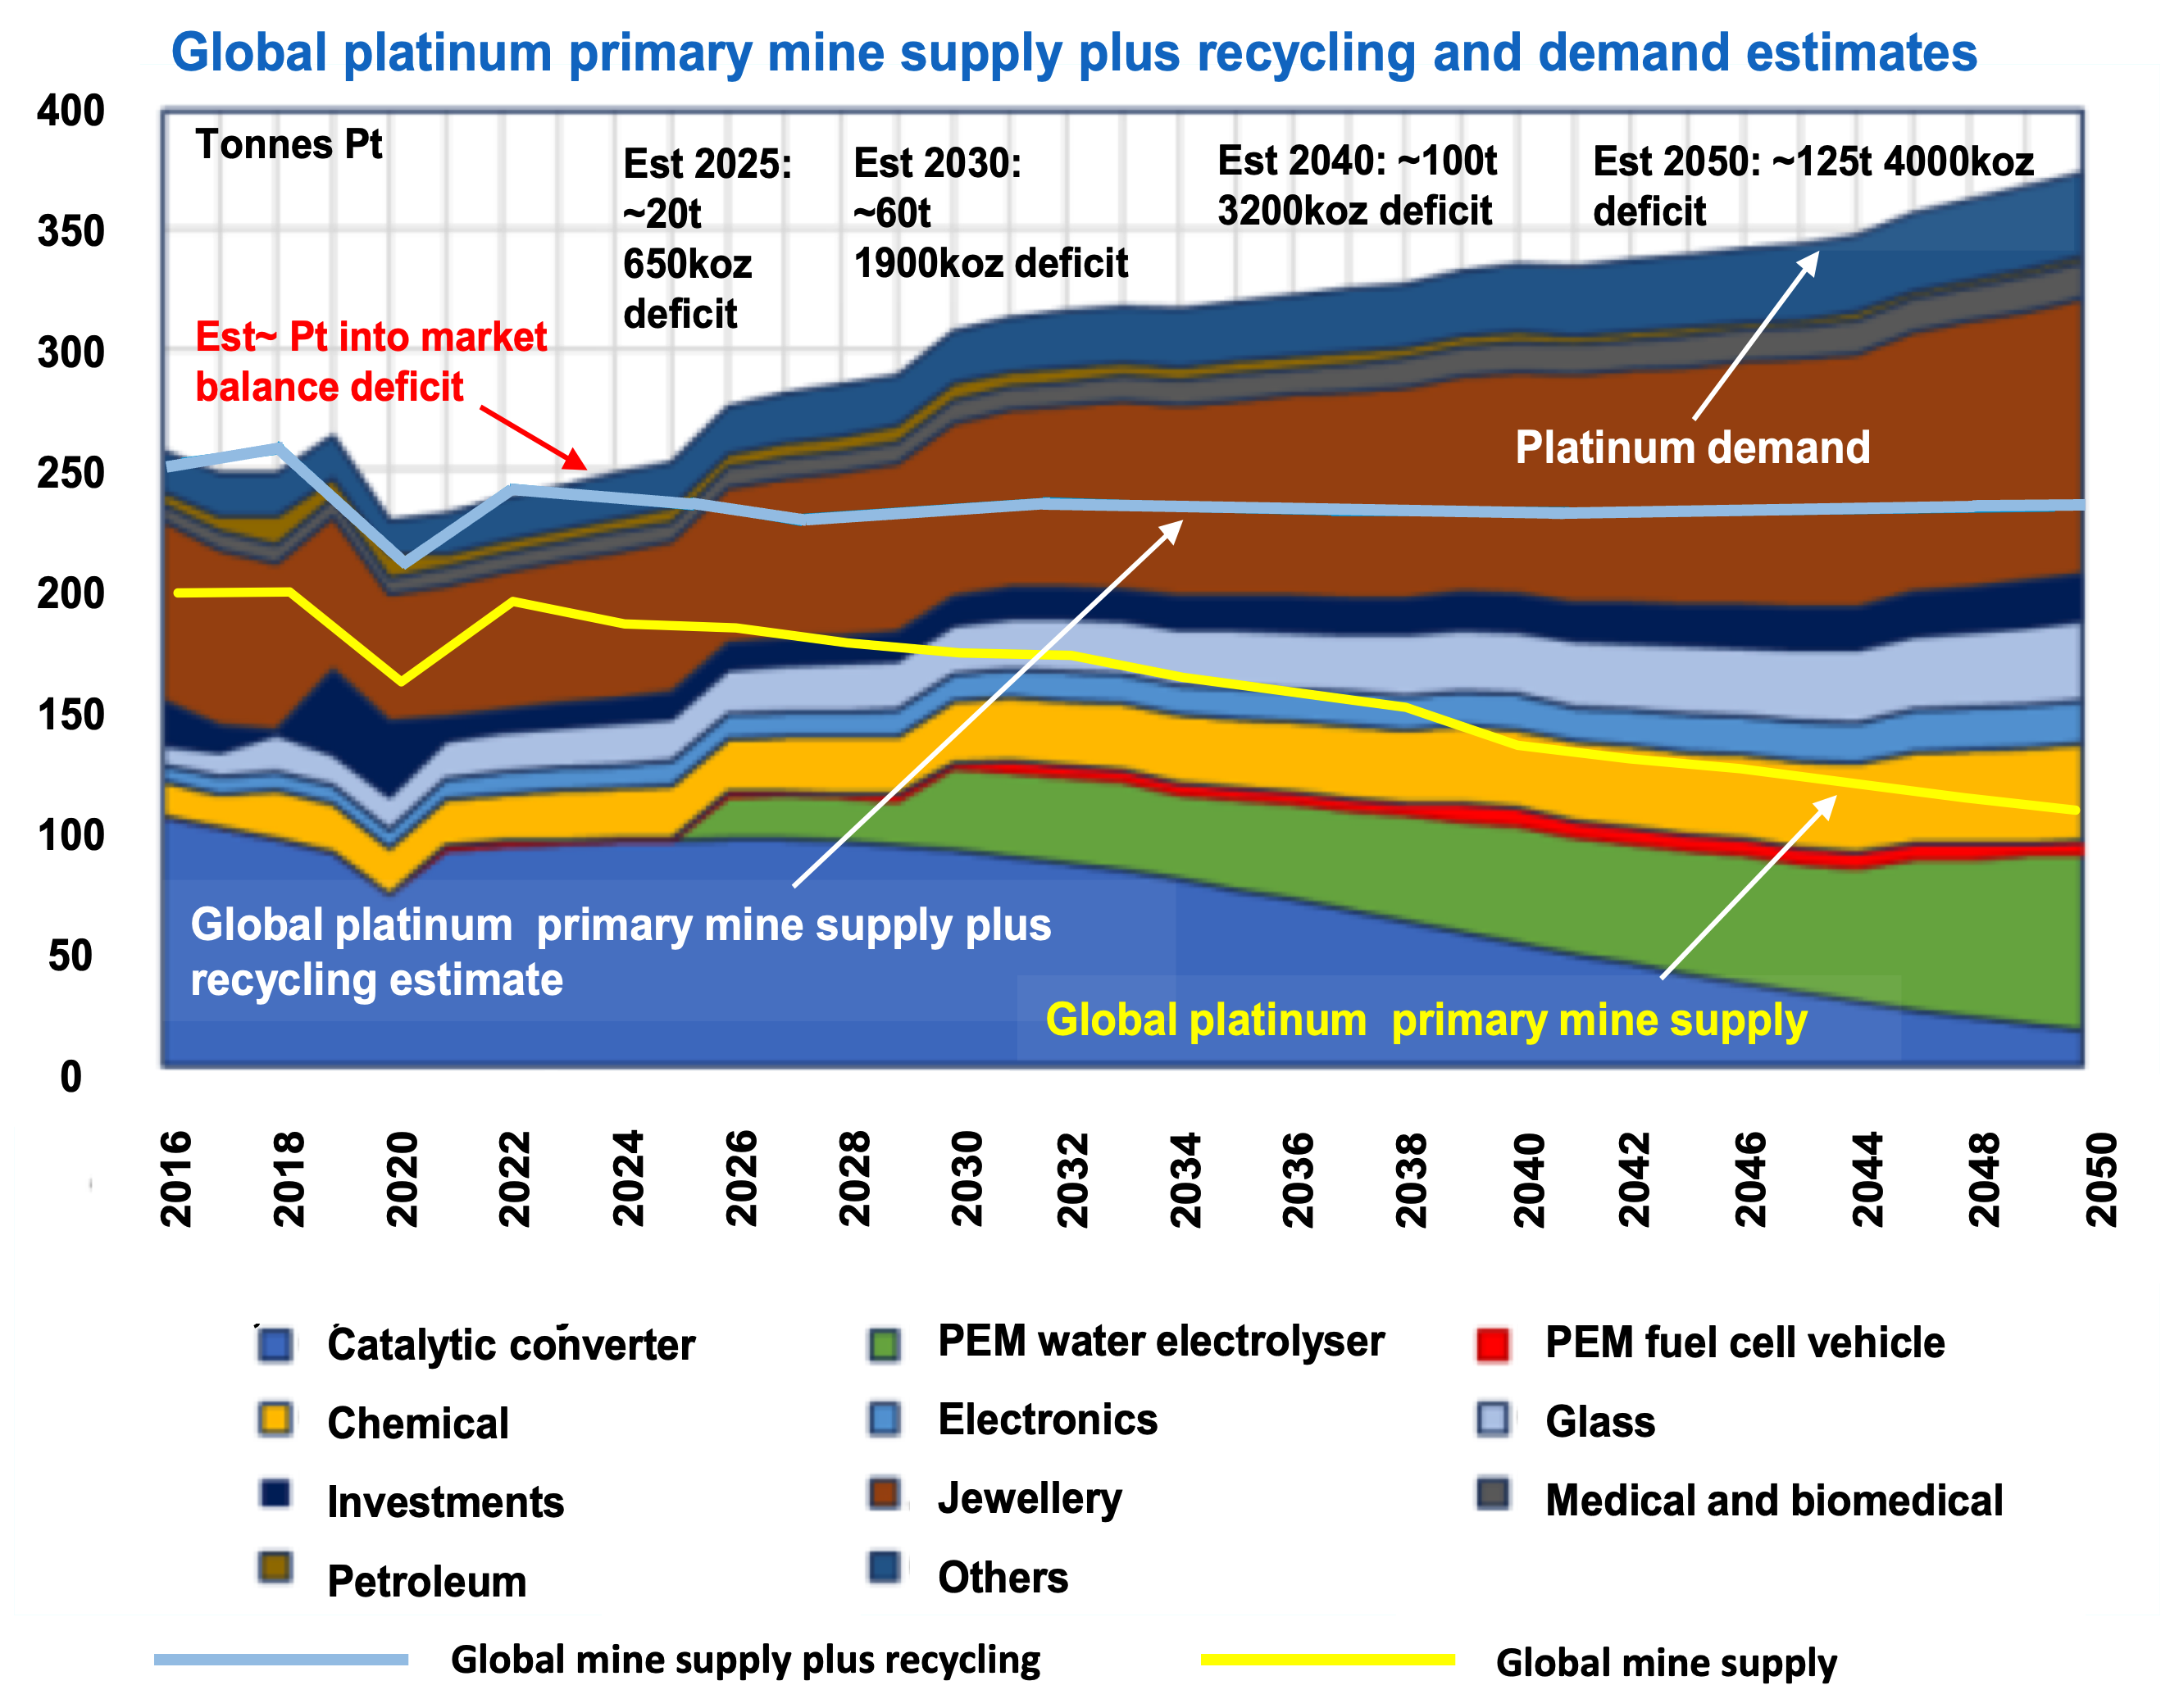 Supply-demand patterns in platinum